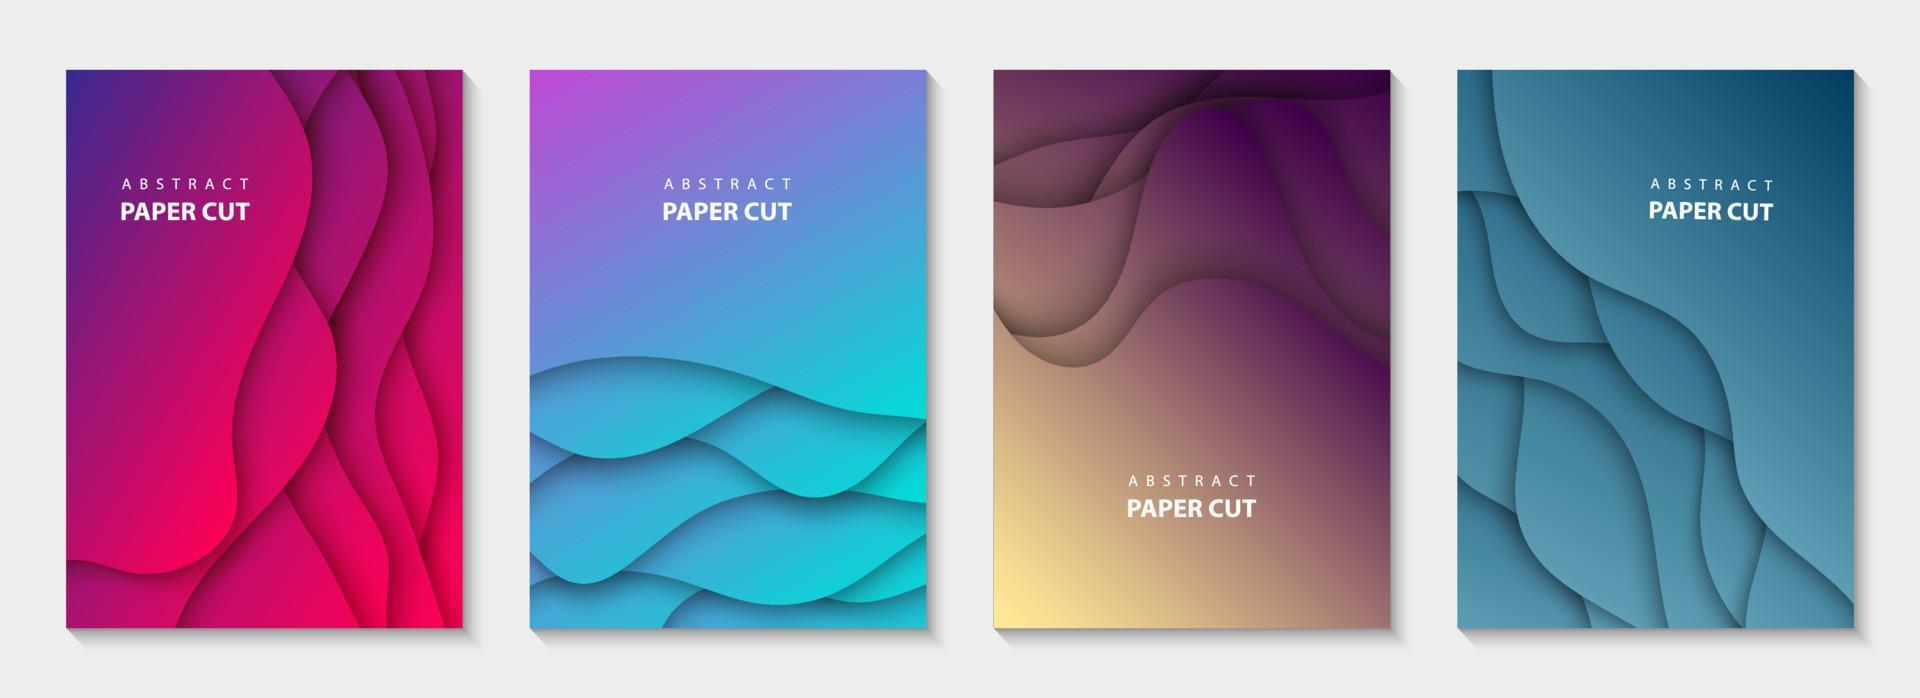 vector verticaal flyers met levendig kleuren papier besnoeiing golven vormen. 3d abstract papier stijl, ontwerp lay-out voor bedrijf presentaties, flyers, affiches, afdrukken, decoratie, kaarten, brochure omslag, spandoeken.